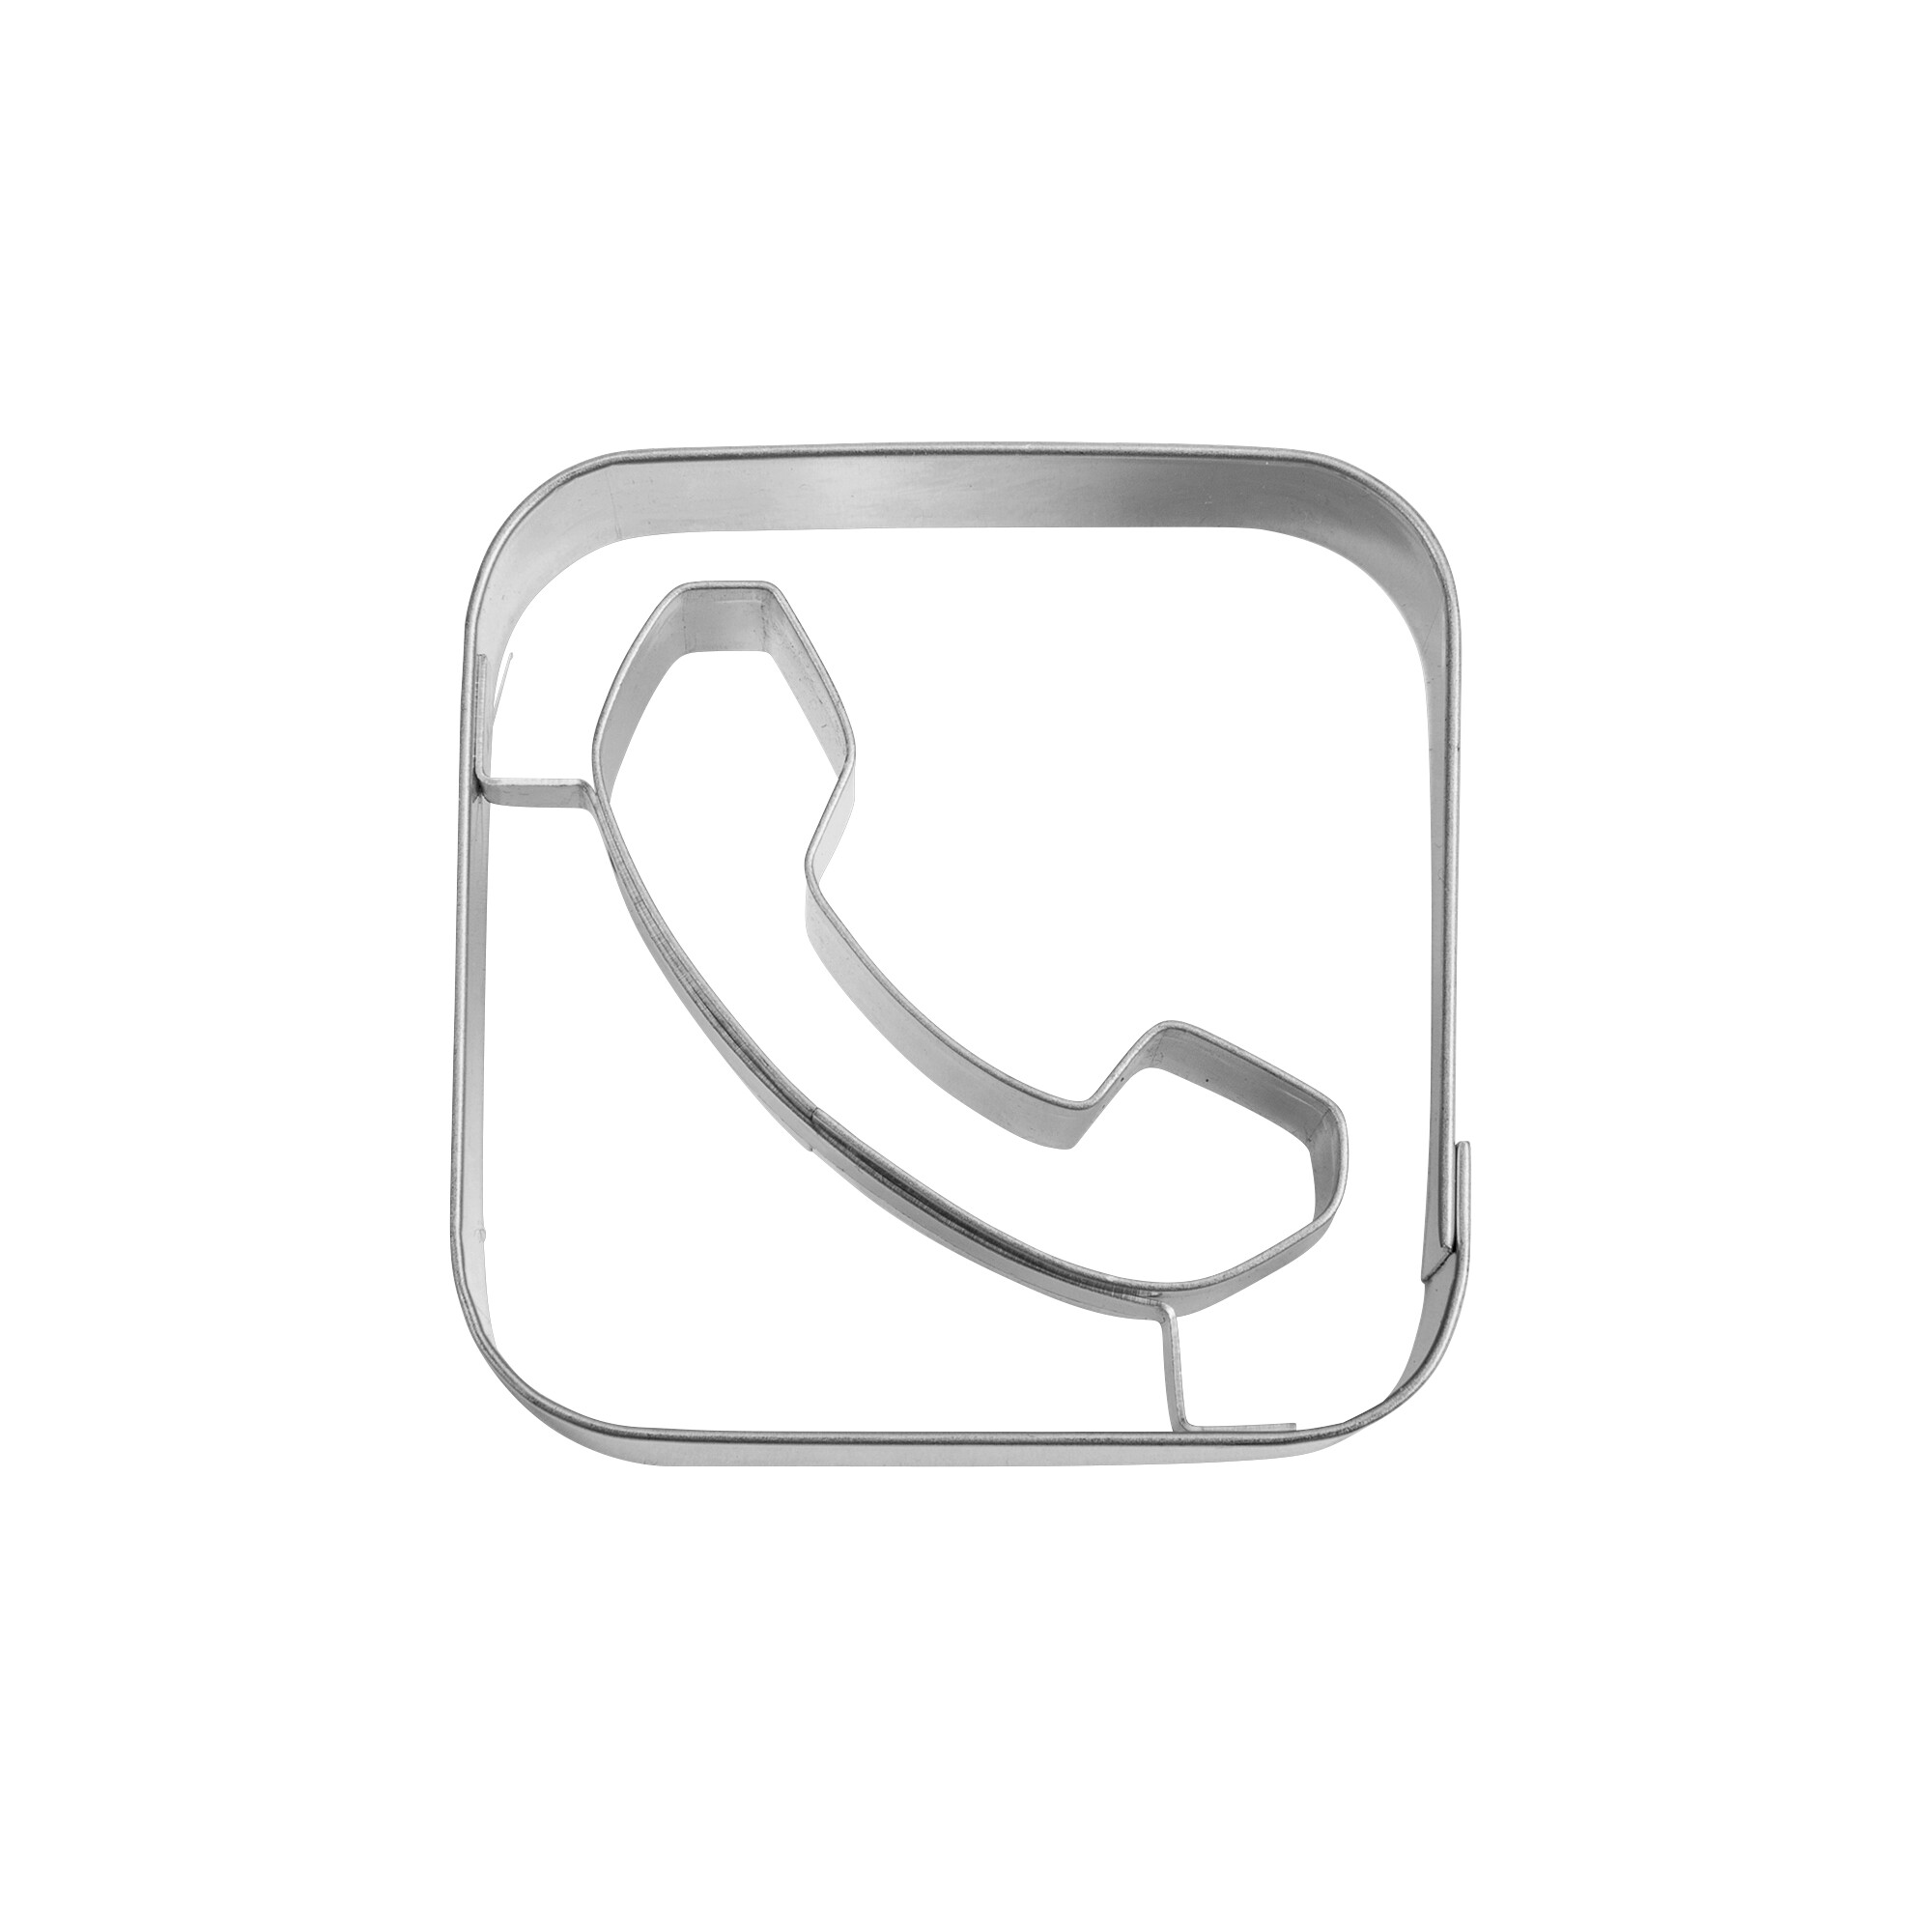 Präge-Ausstecher – App-Cutter Phone